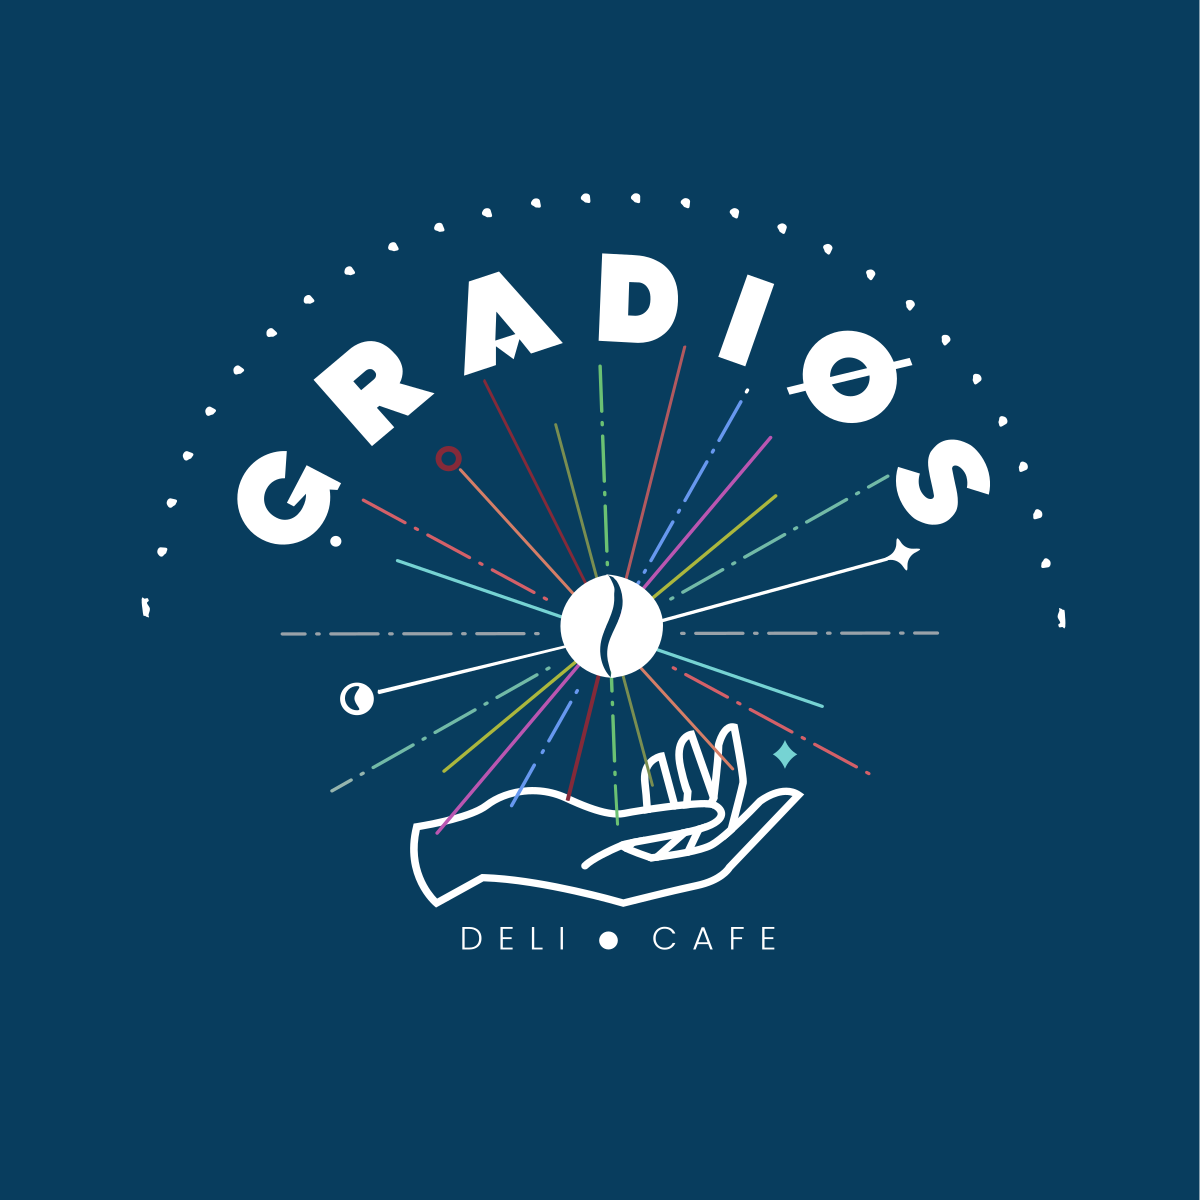 Café Gradios